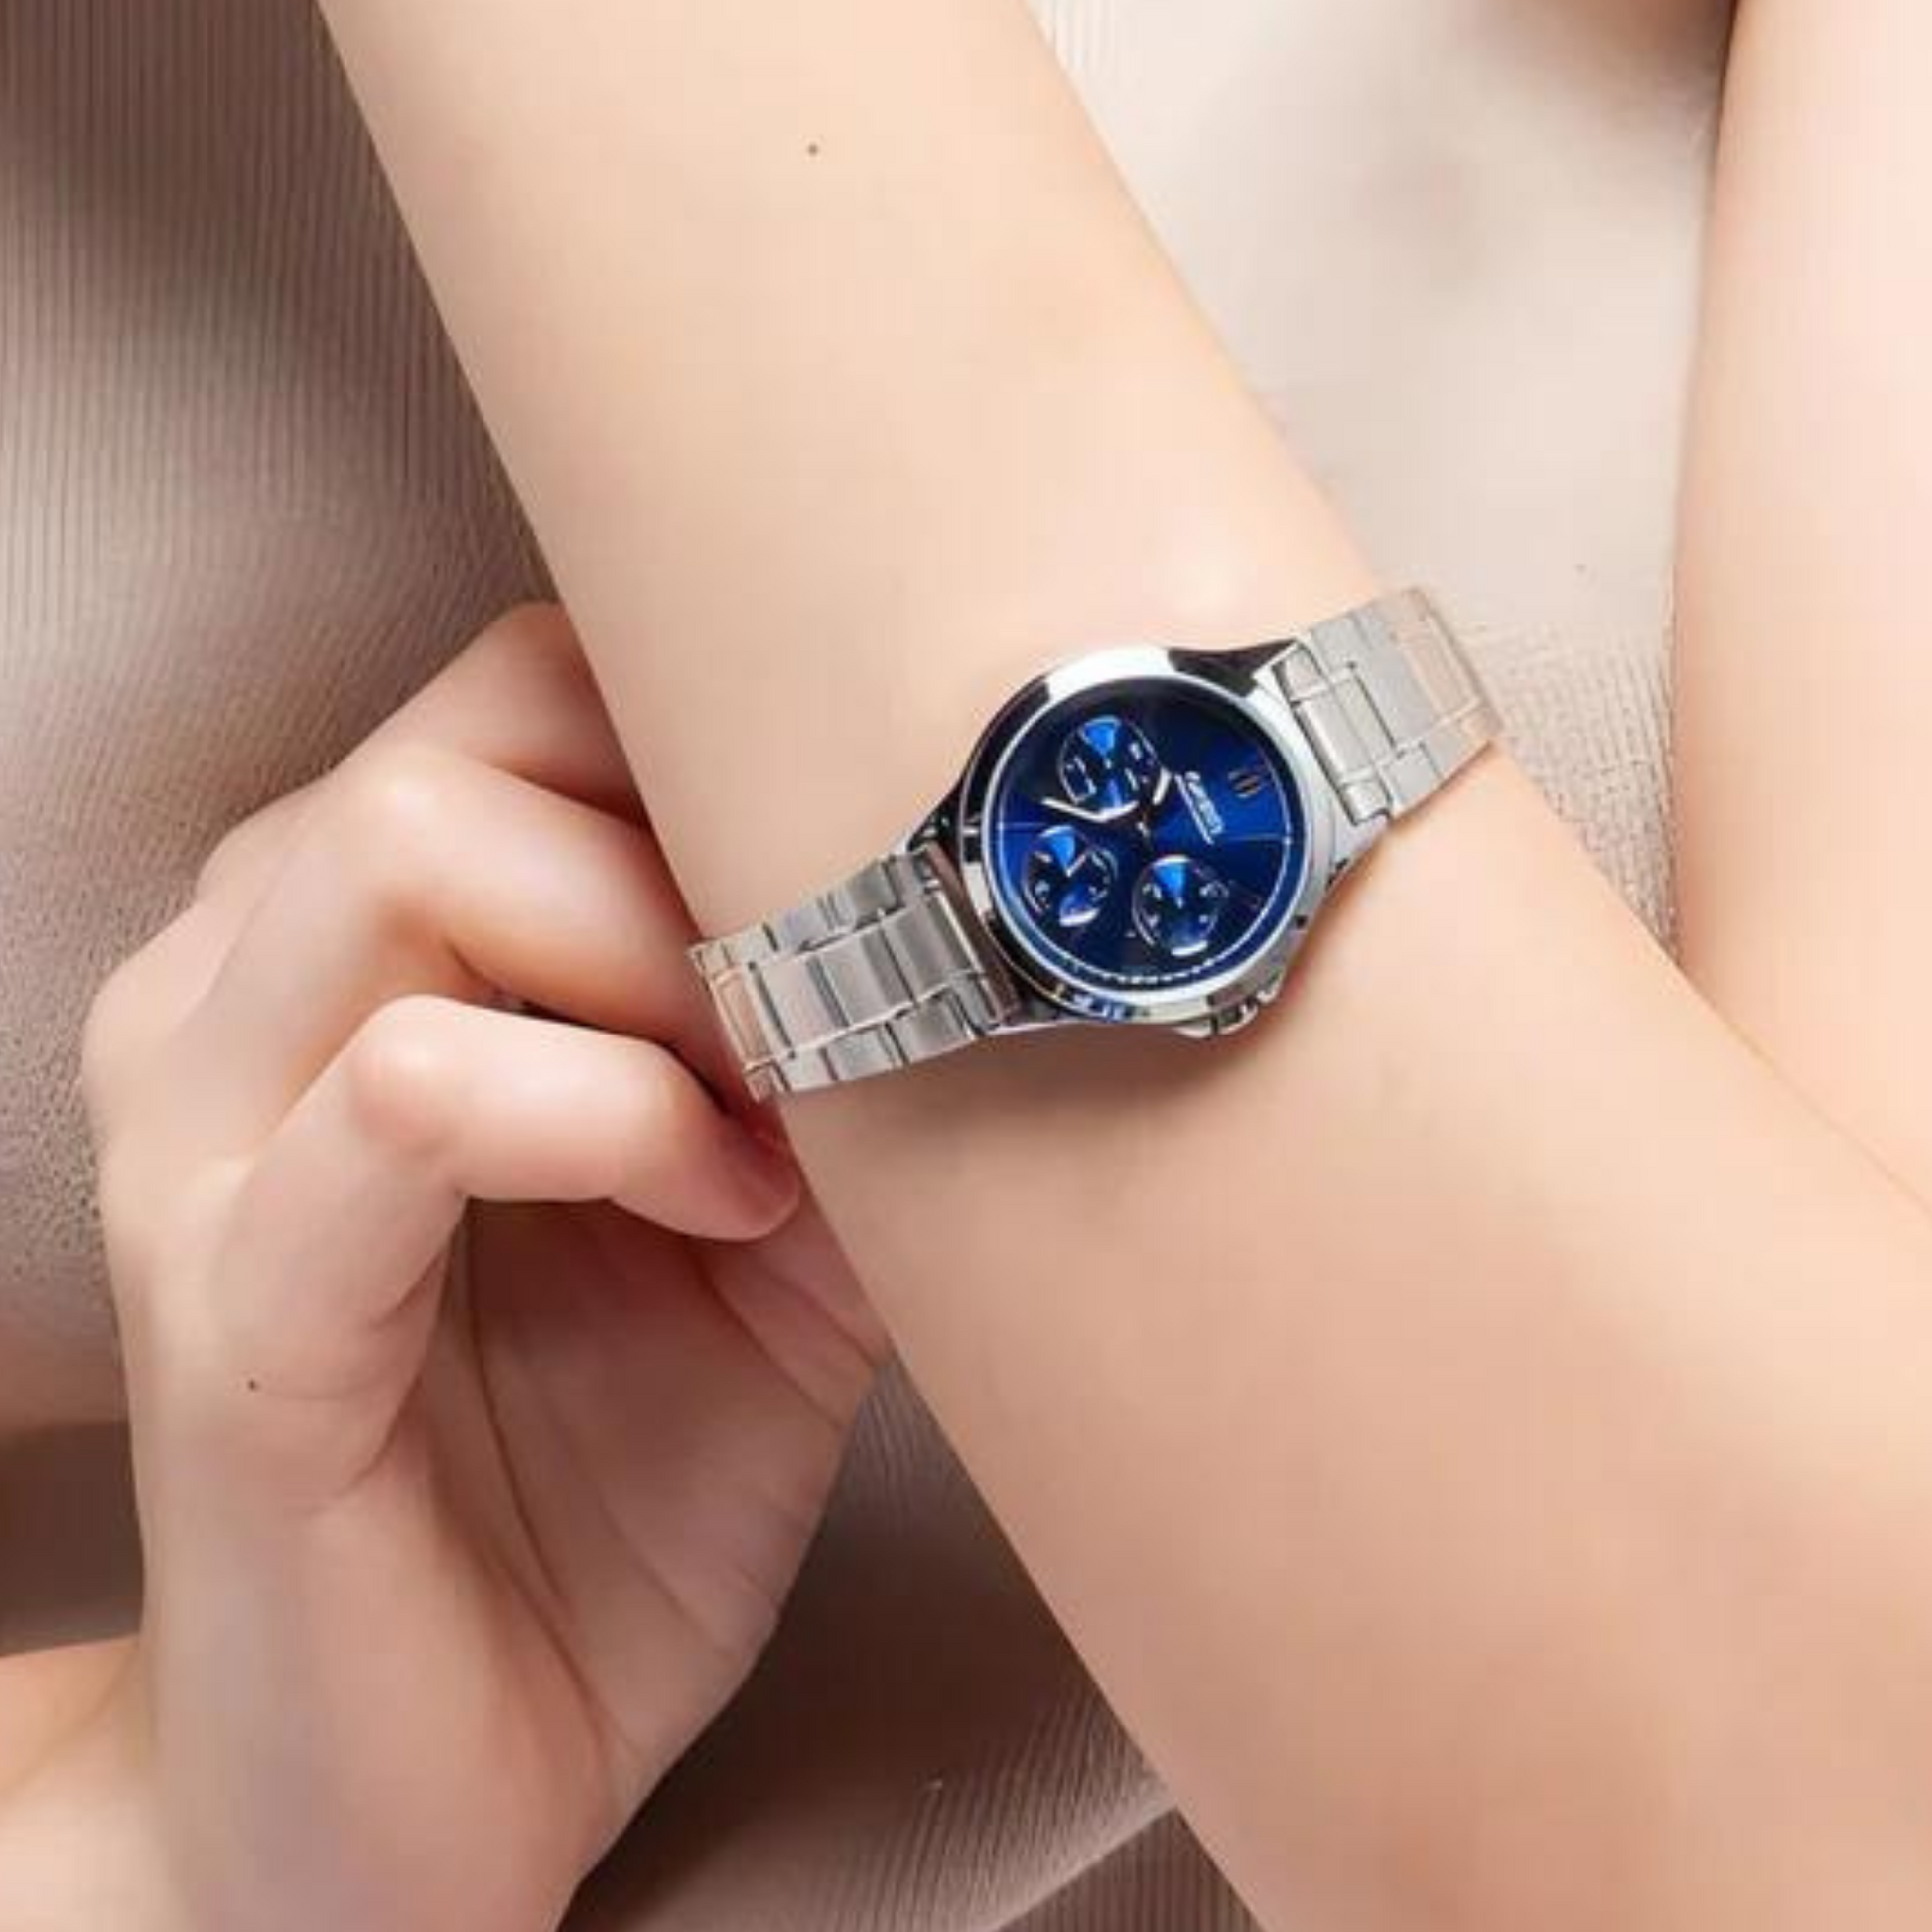 Reloj Casio Mujer Colección Lujo Acero Elegante LTP-V300D-2A2UDF – Brillo  Encanto